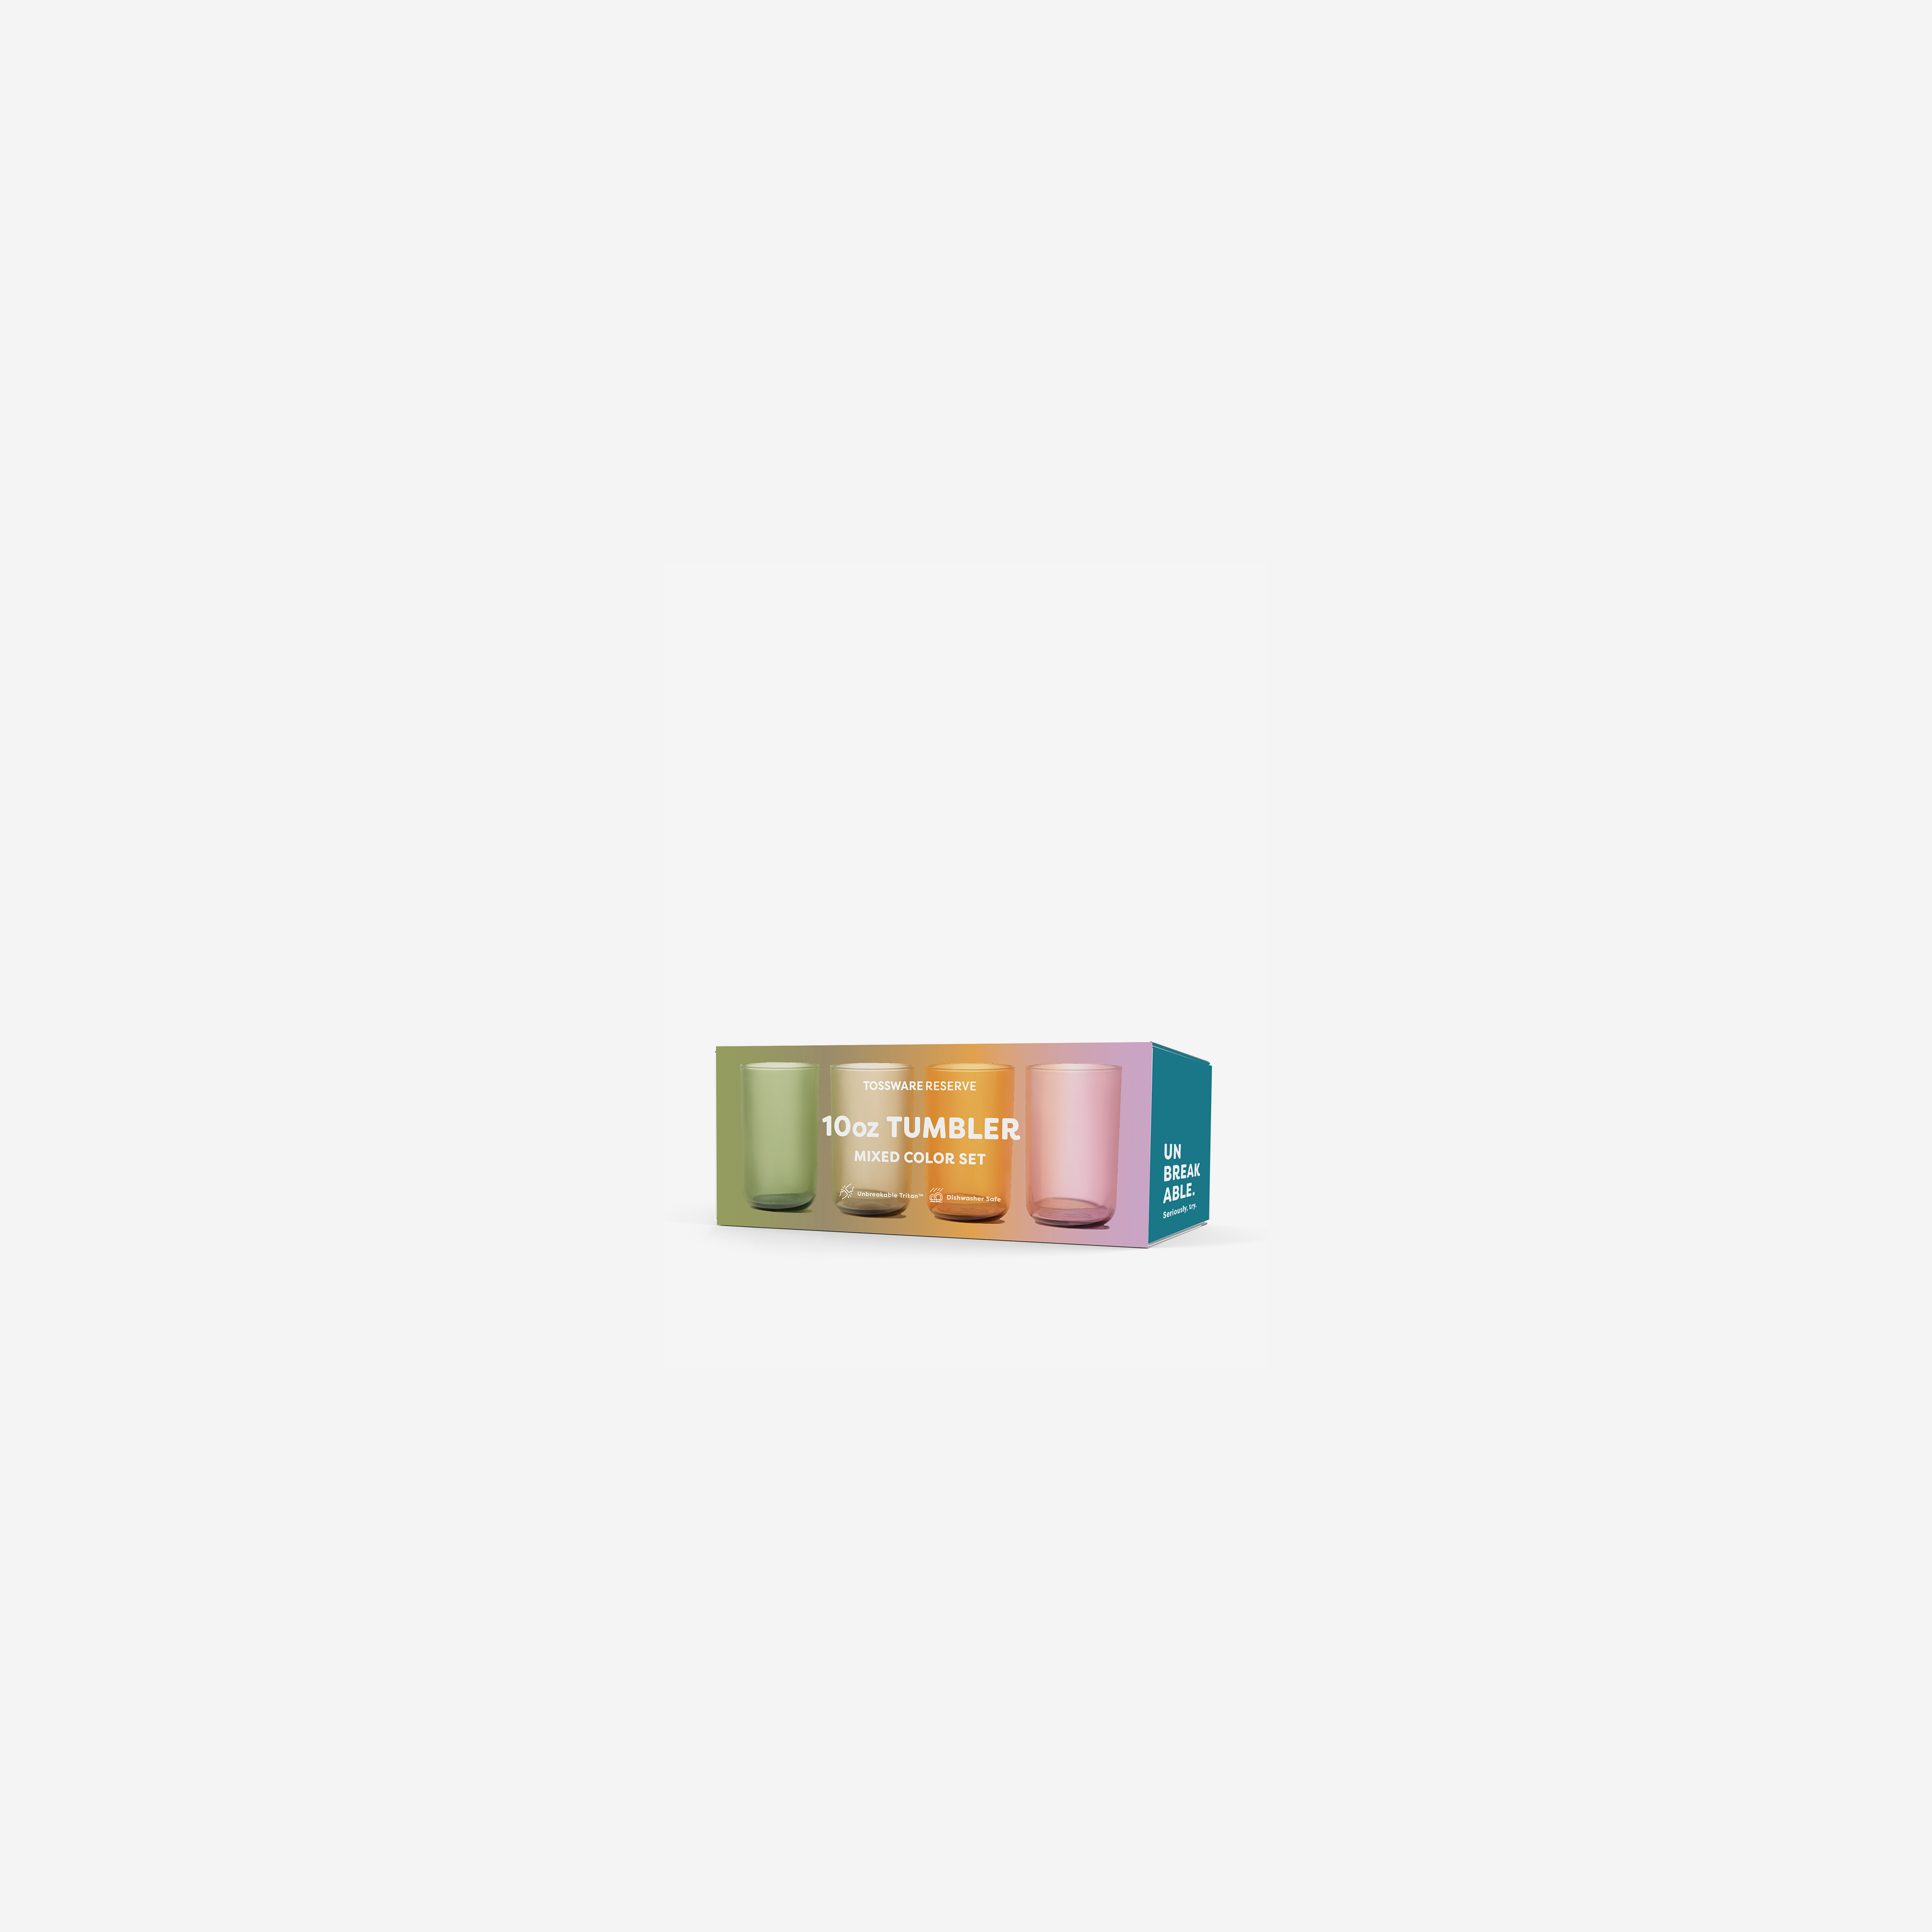 RESERVE 10oz Tumbler Tritan Copolyester Glass - Mixed Color Set